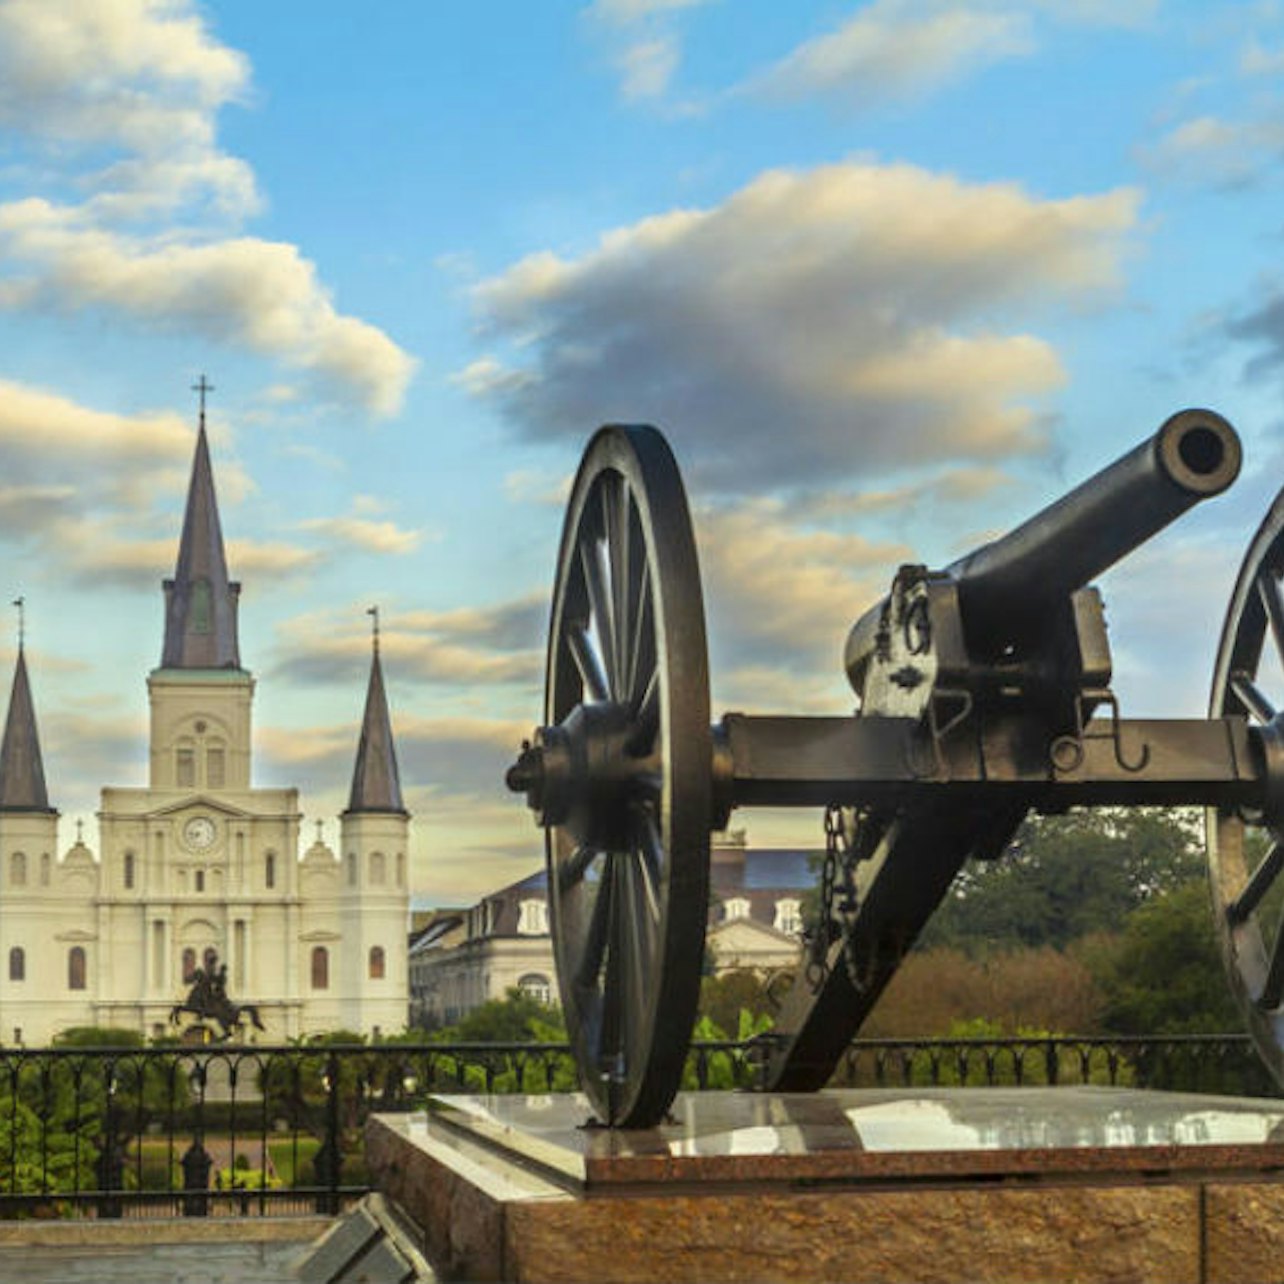 Sightseeing Flex Pass de Nueva Orleans - Alojamientos en Nueva Orleans